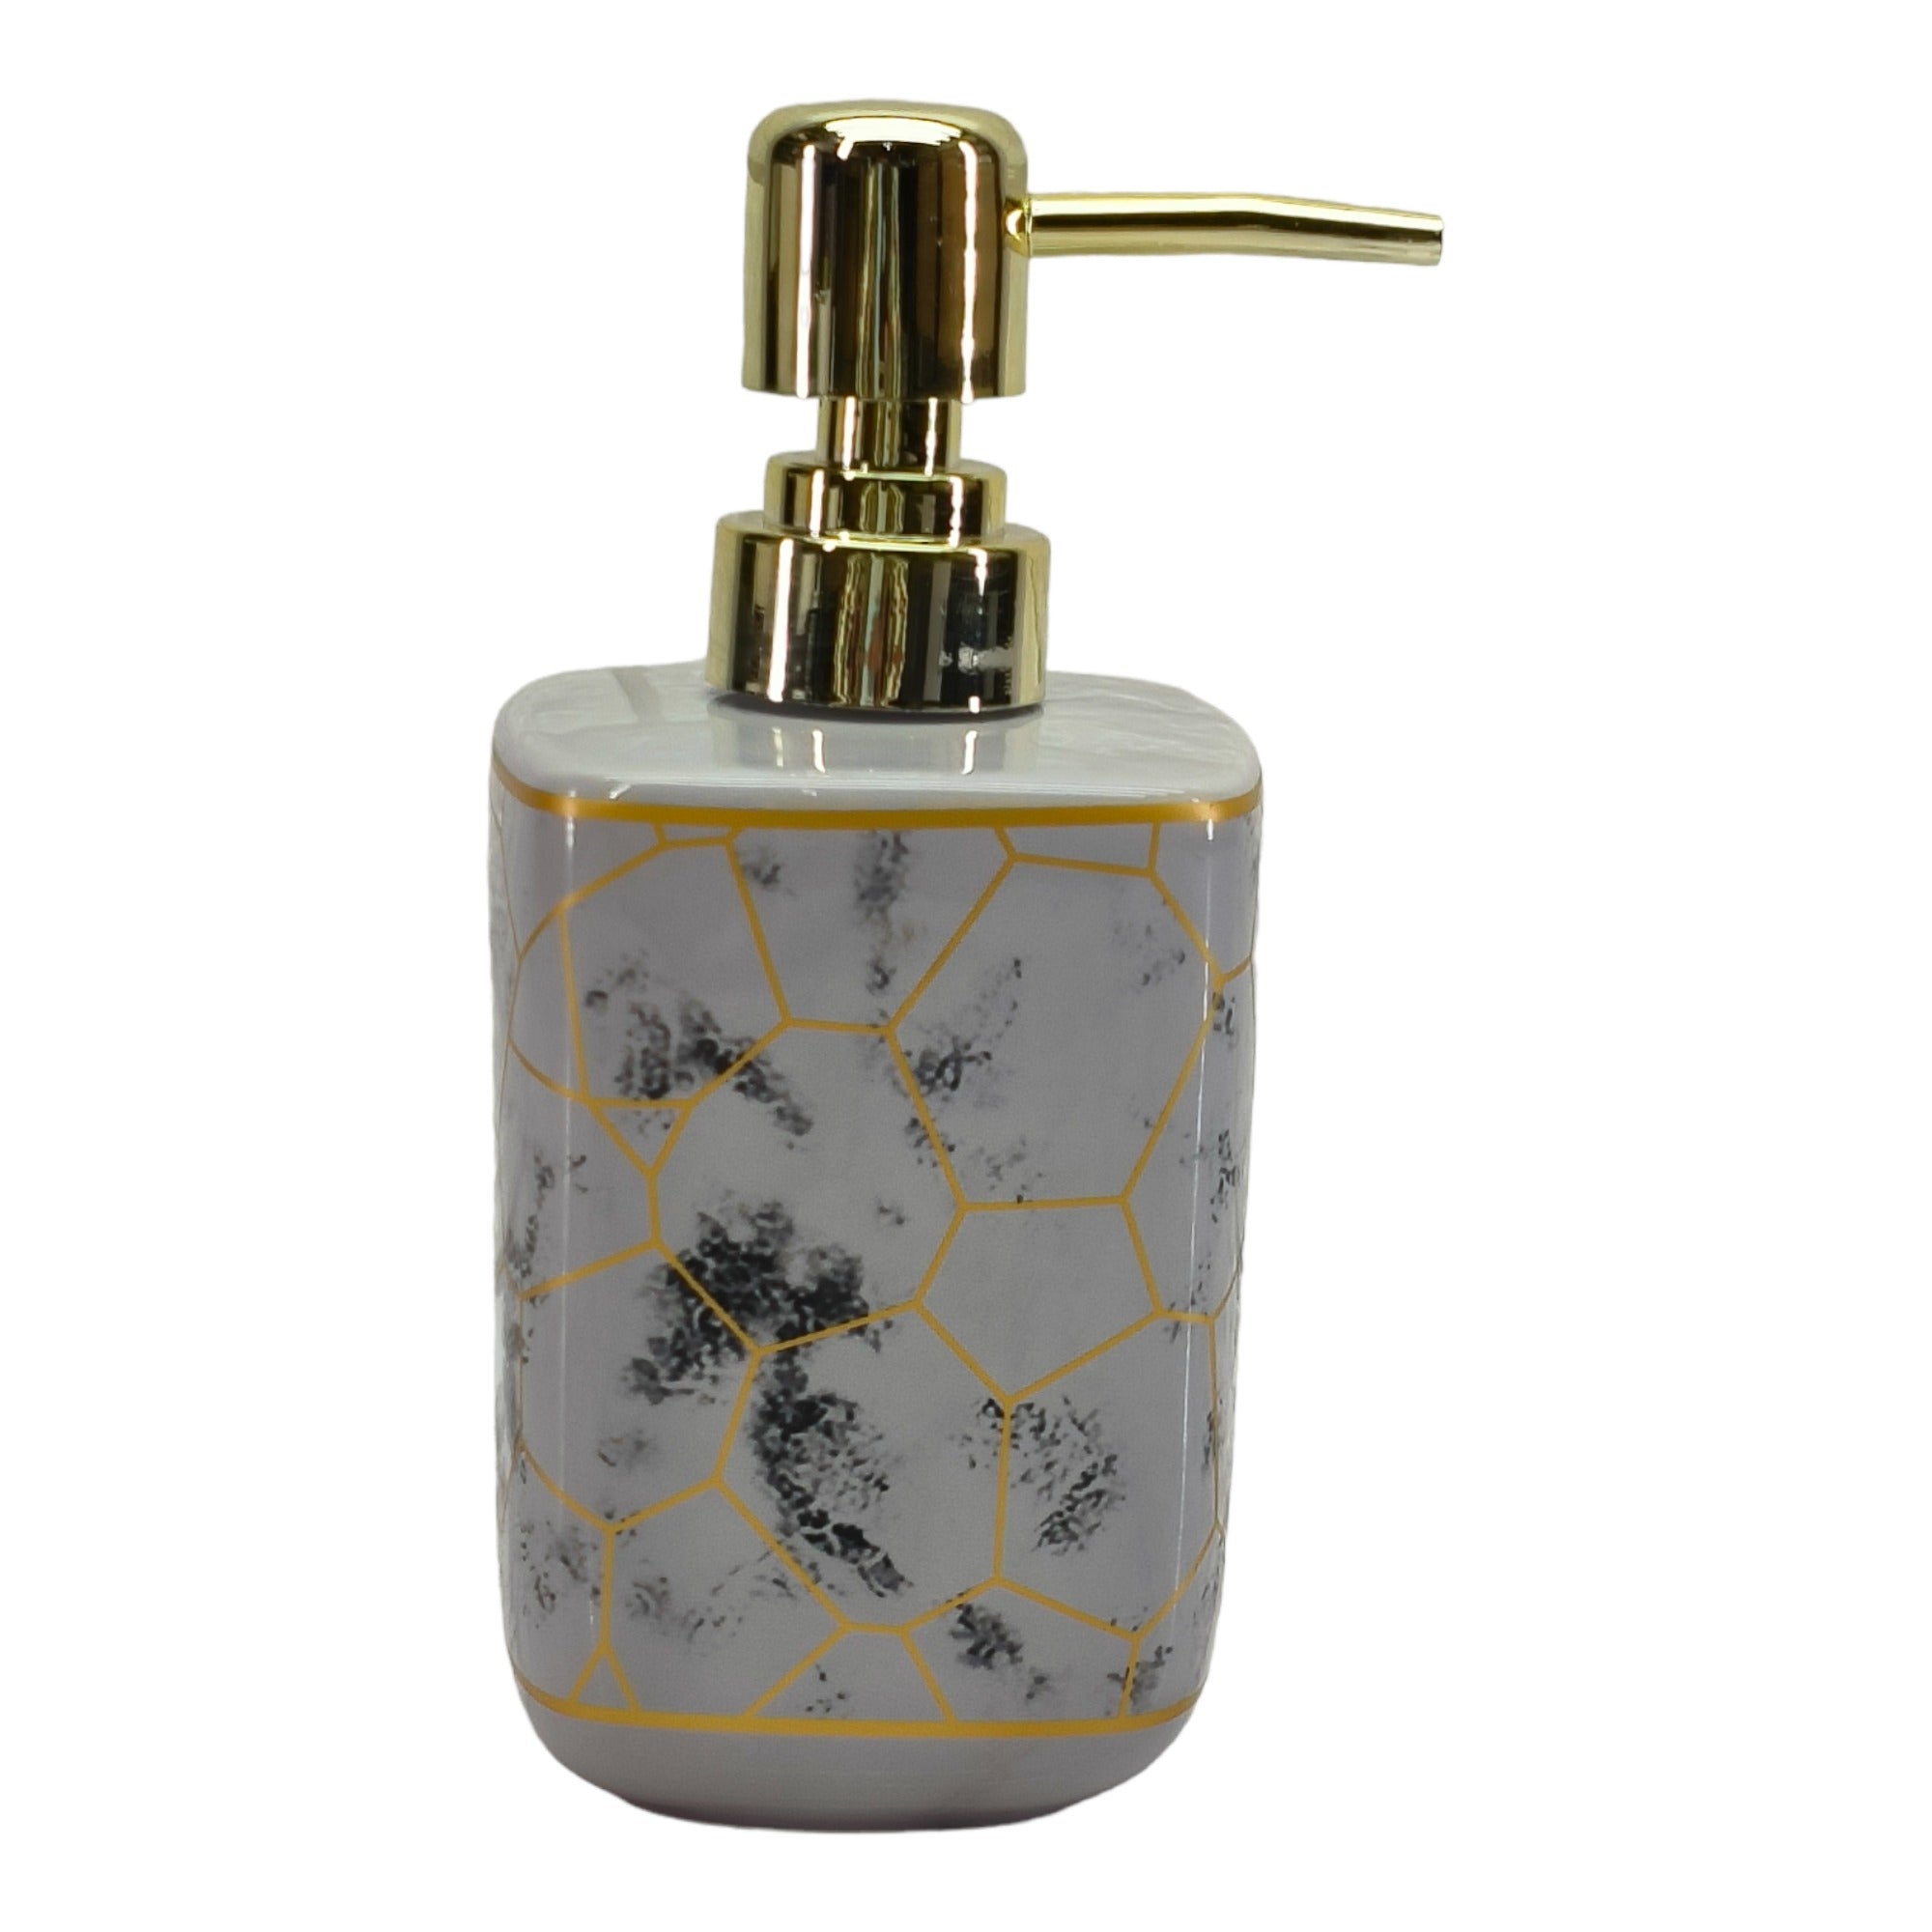 Ceramic Soap Dispenser Set of 1 Bathroom Accessories for Home (C1073)